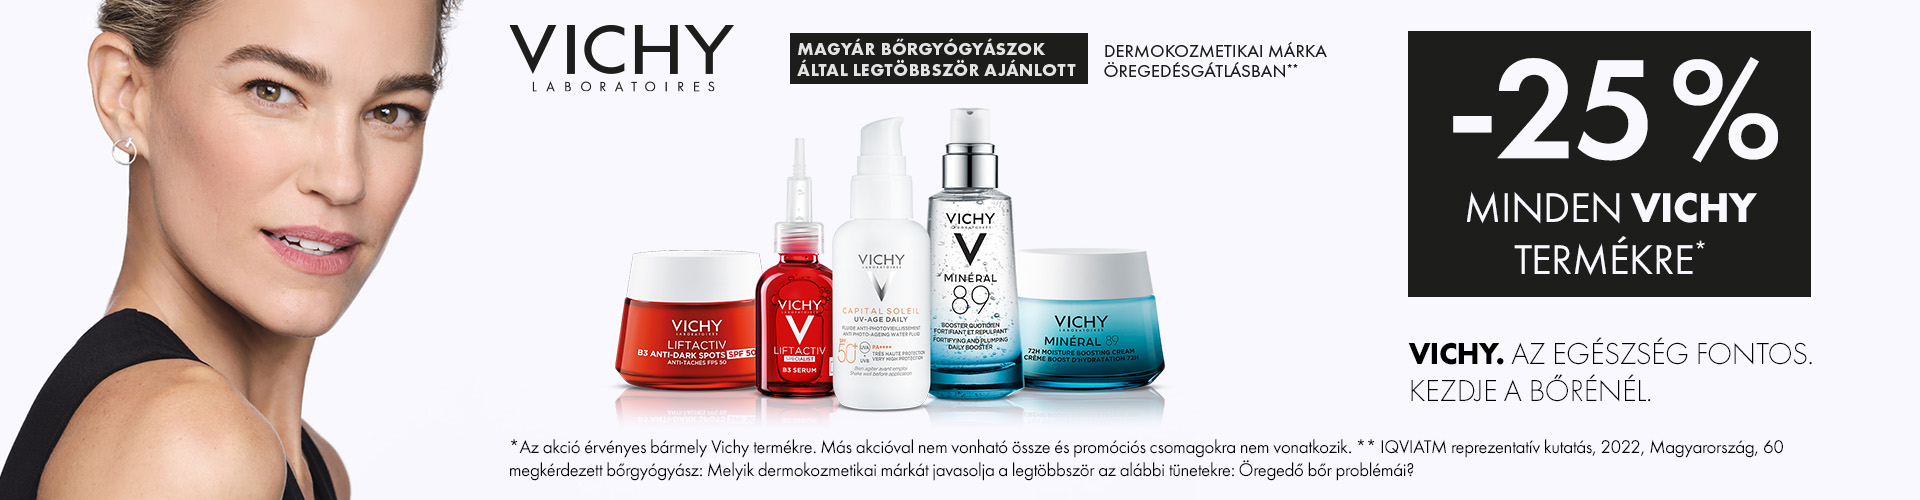 Nyárcsalogató Vichy napok: 2024. május 27. és június 10 között  25% kedvezménnyel adunk minden Vichy terméket! 